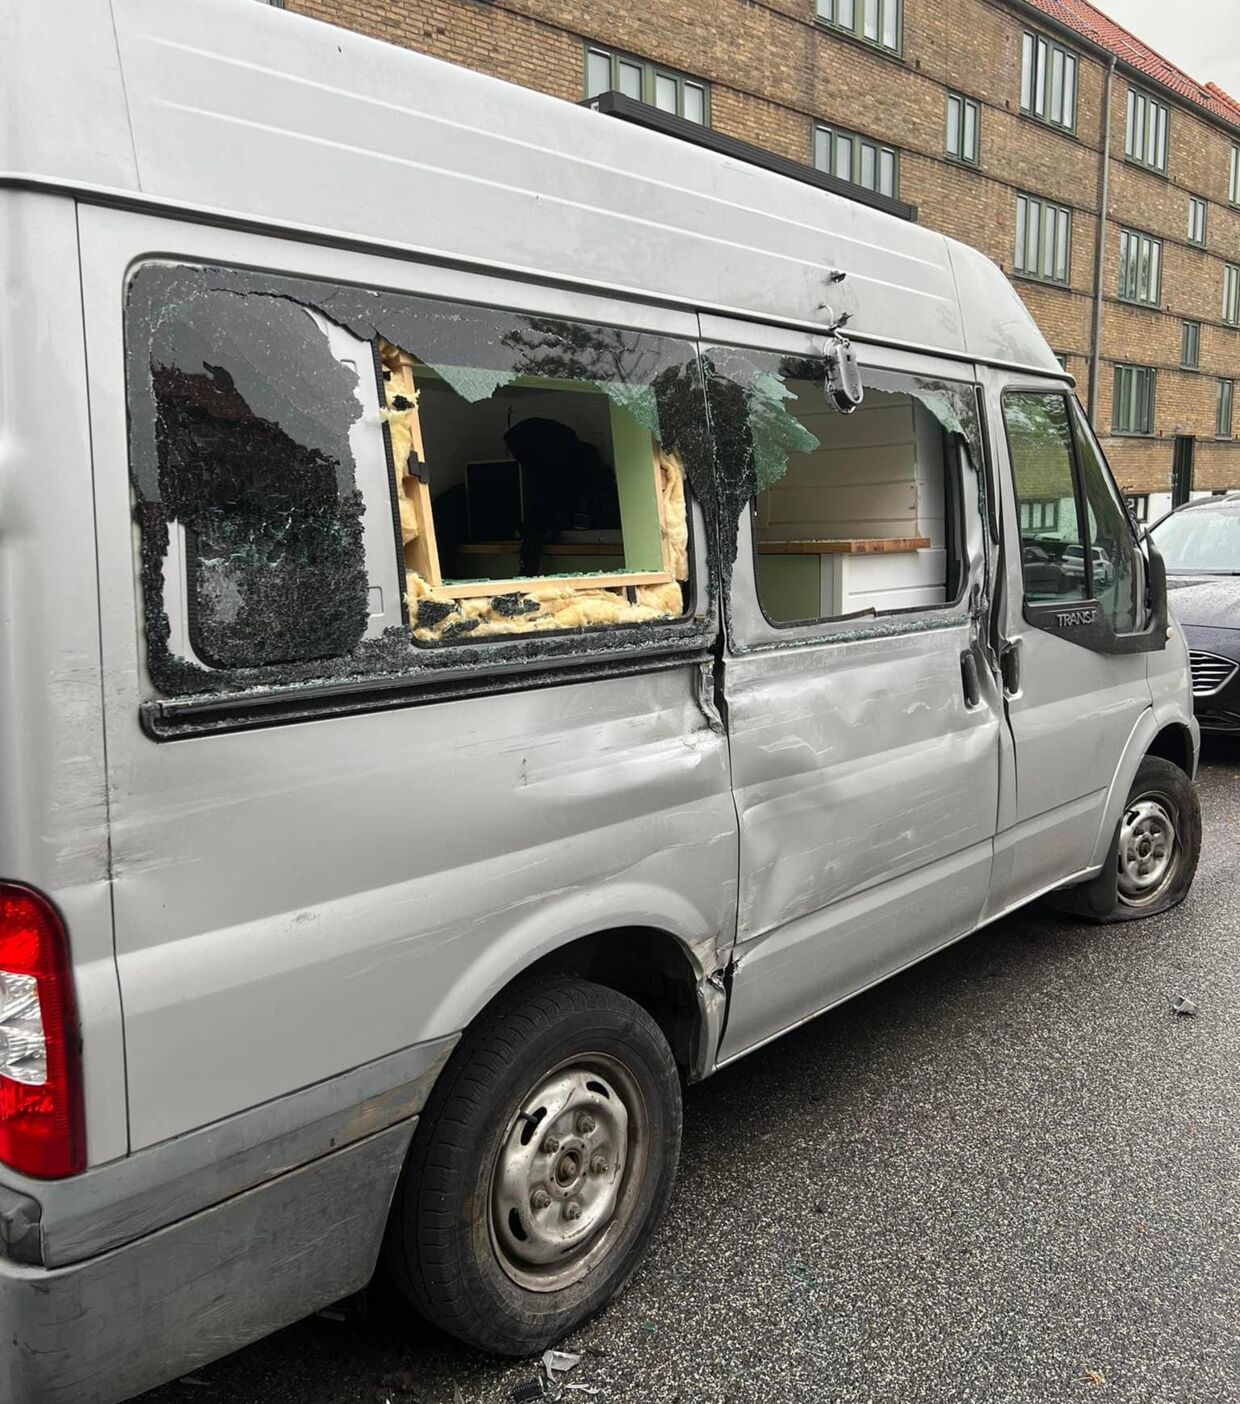 Her ses et foto af den smadrede autocamper. Påkørslen fandt sted omkring klokken 05 lødag 21. maj på Hillerødgade på Nørrebro. To andre biler blev også beskadiget. Foto: Privatfoto